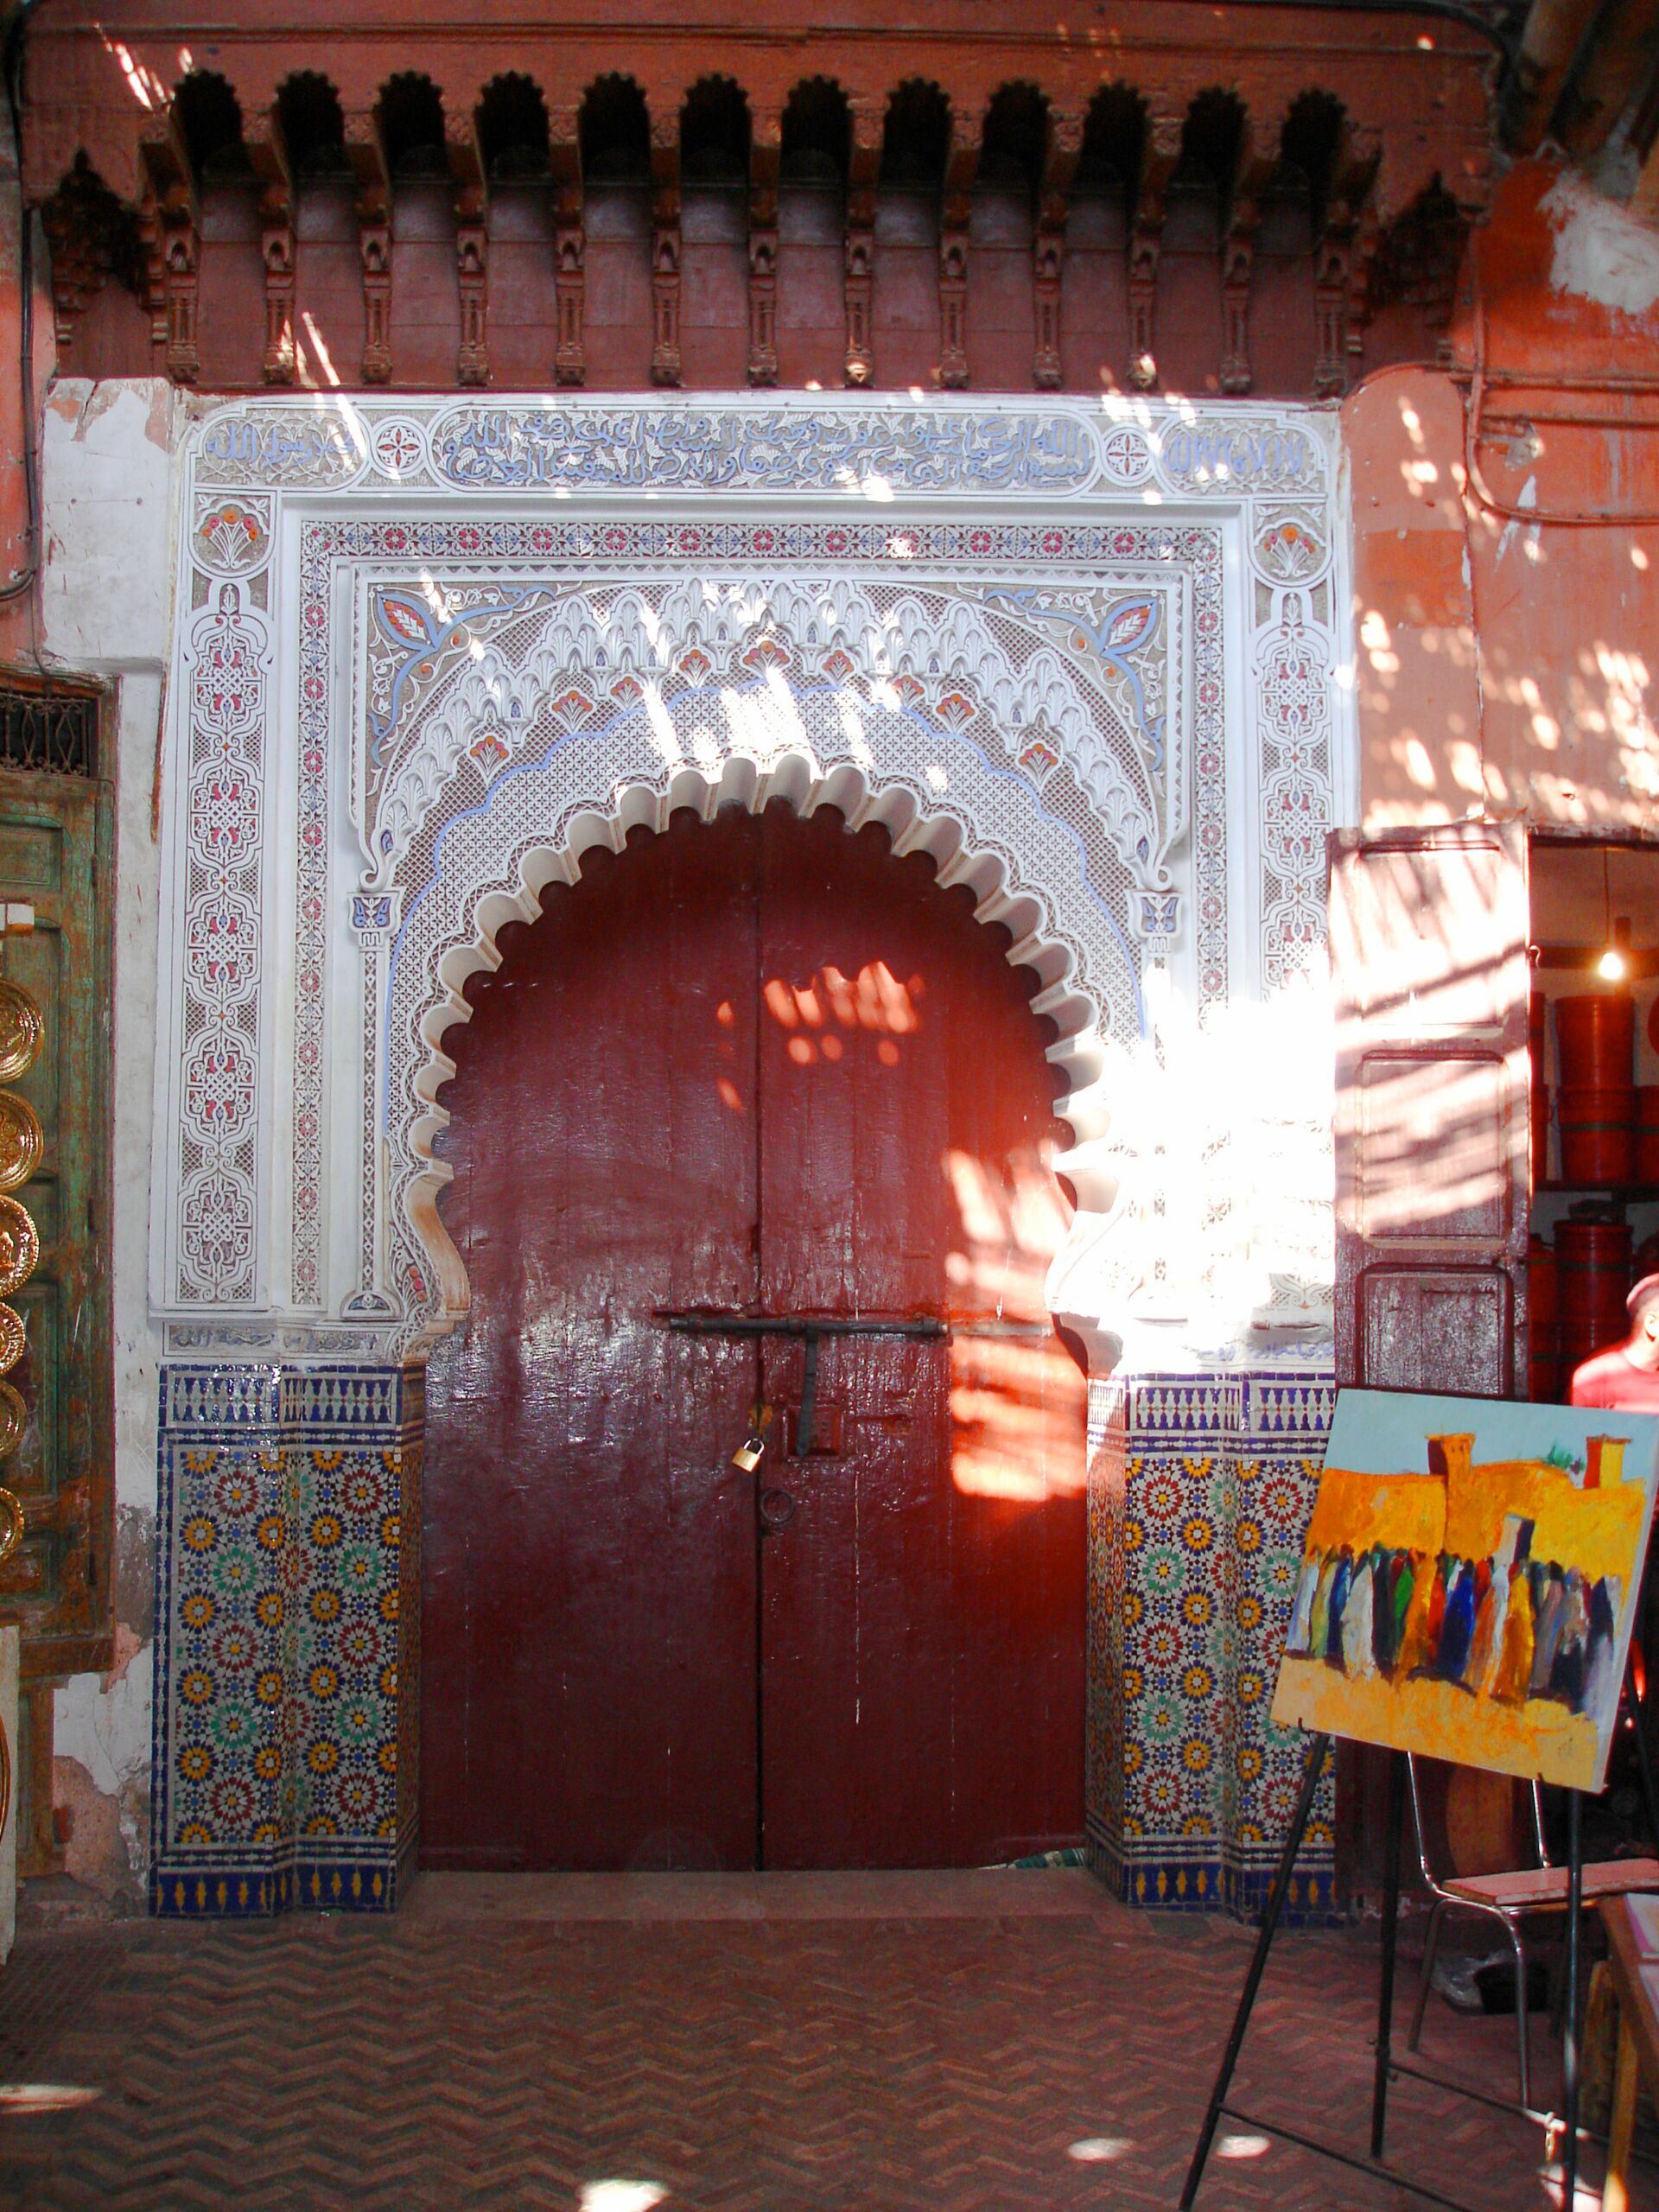 Orientalische Bauten- & Handwerkskunst in der Medina von Marrakesch